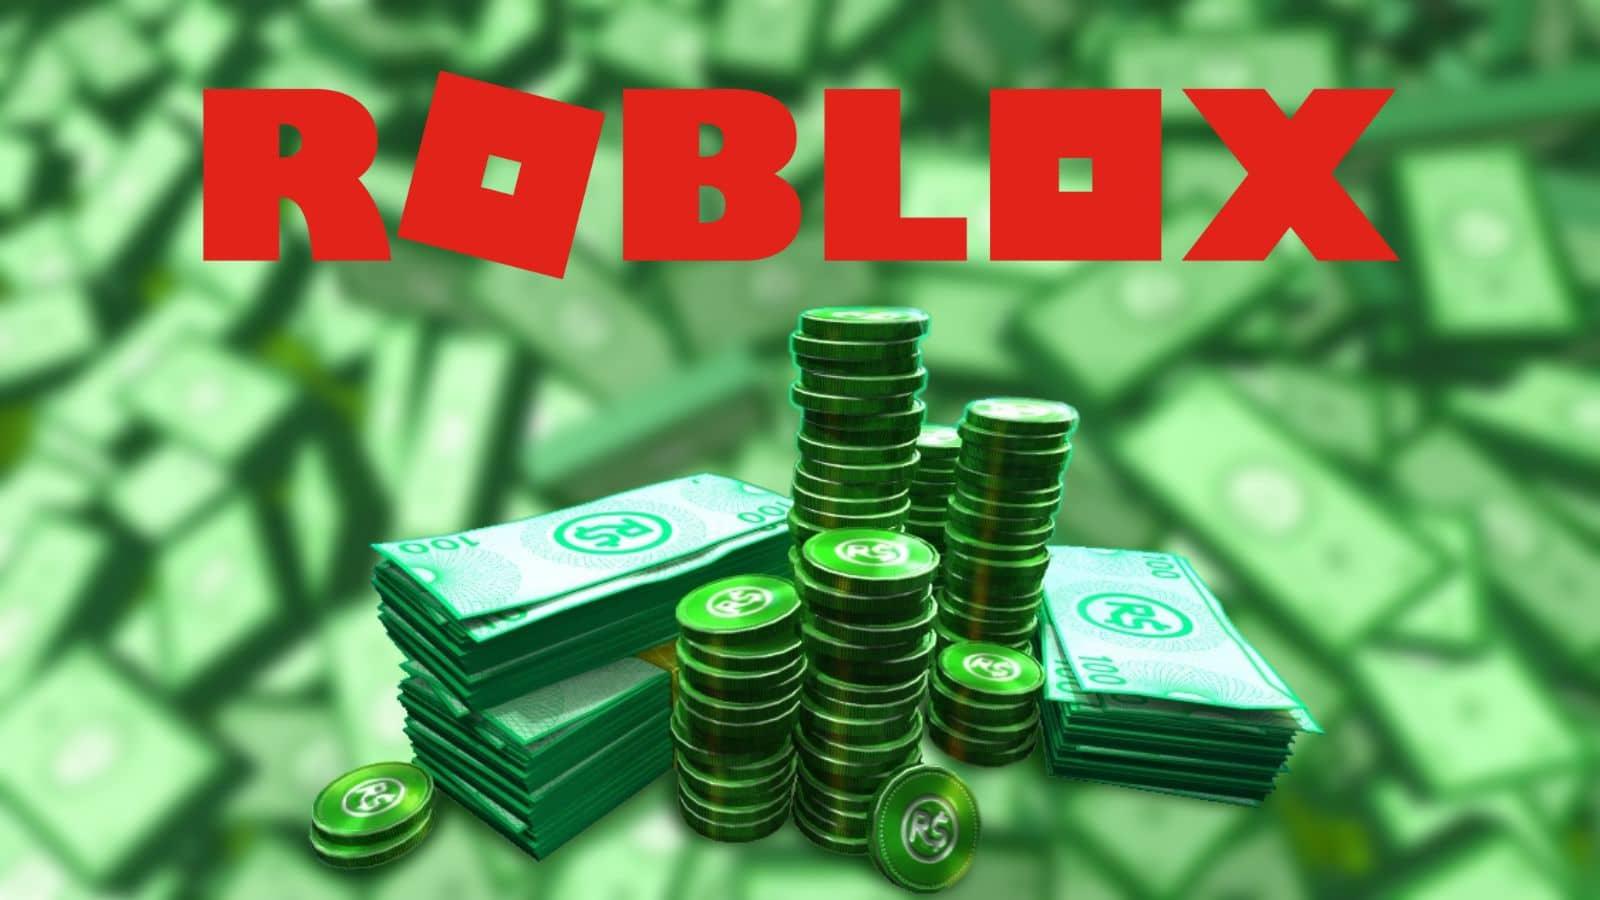 How To Get Free Robux How to get free Robux in Roblox - Dexerto